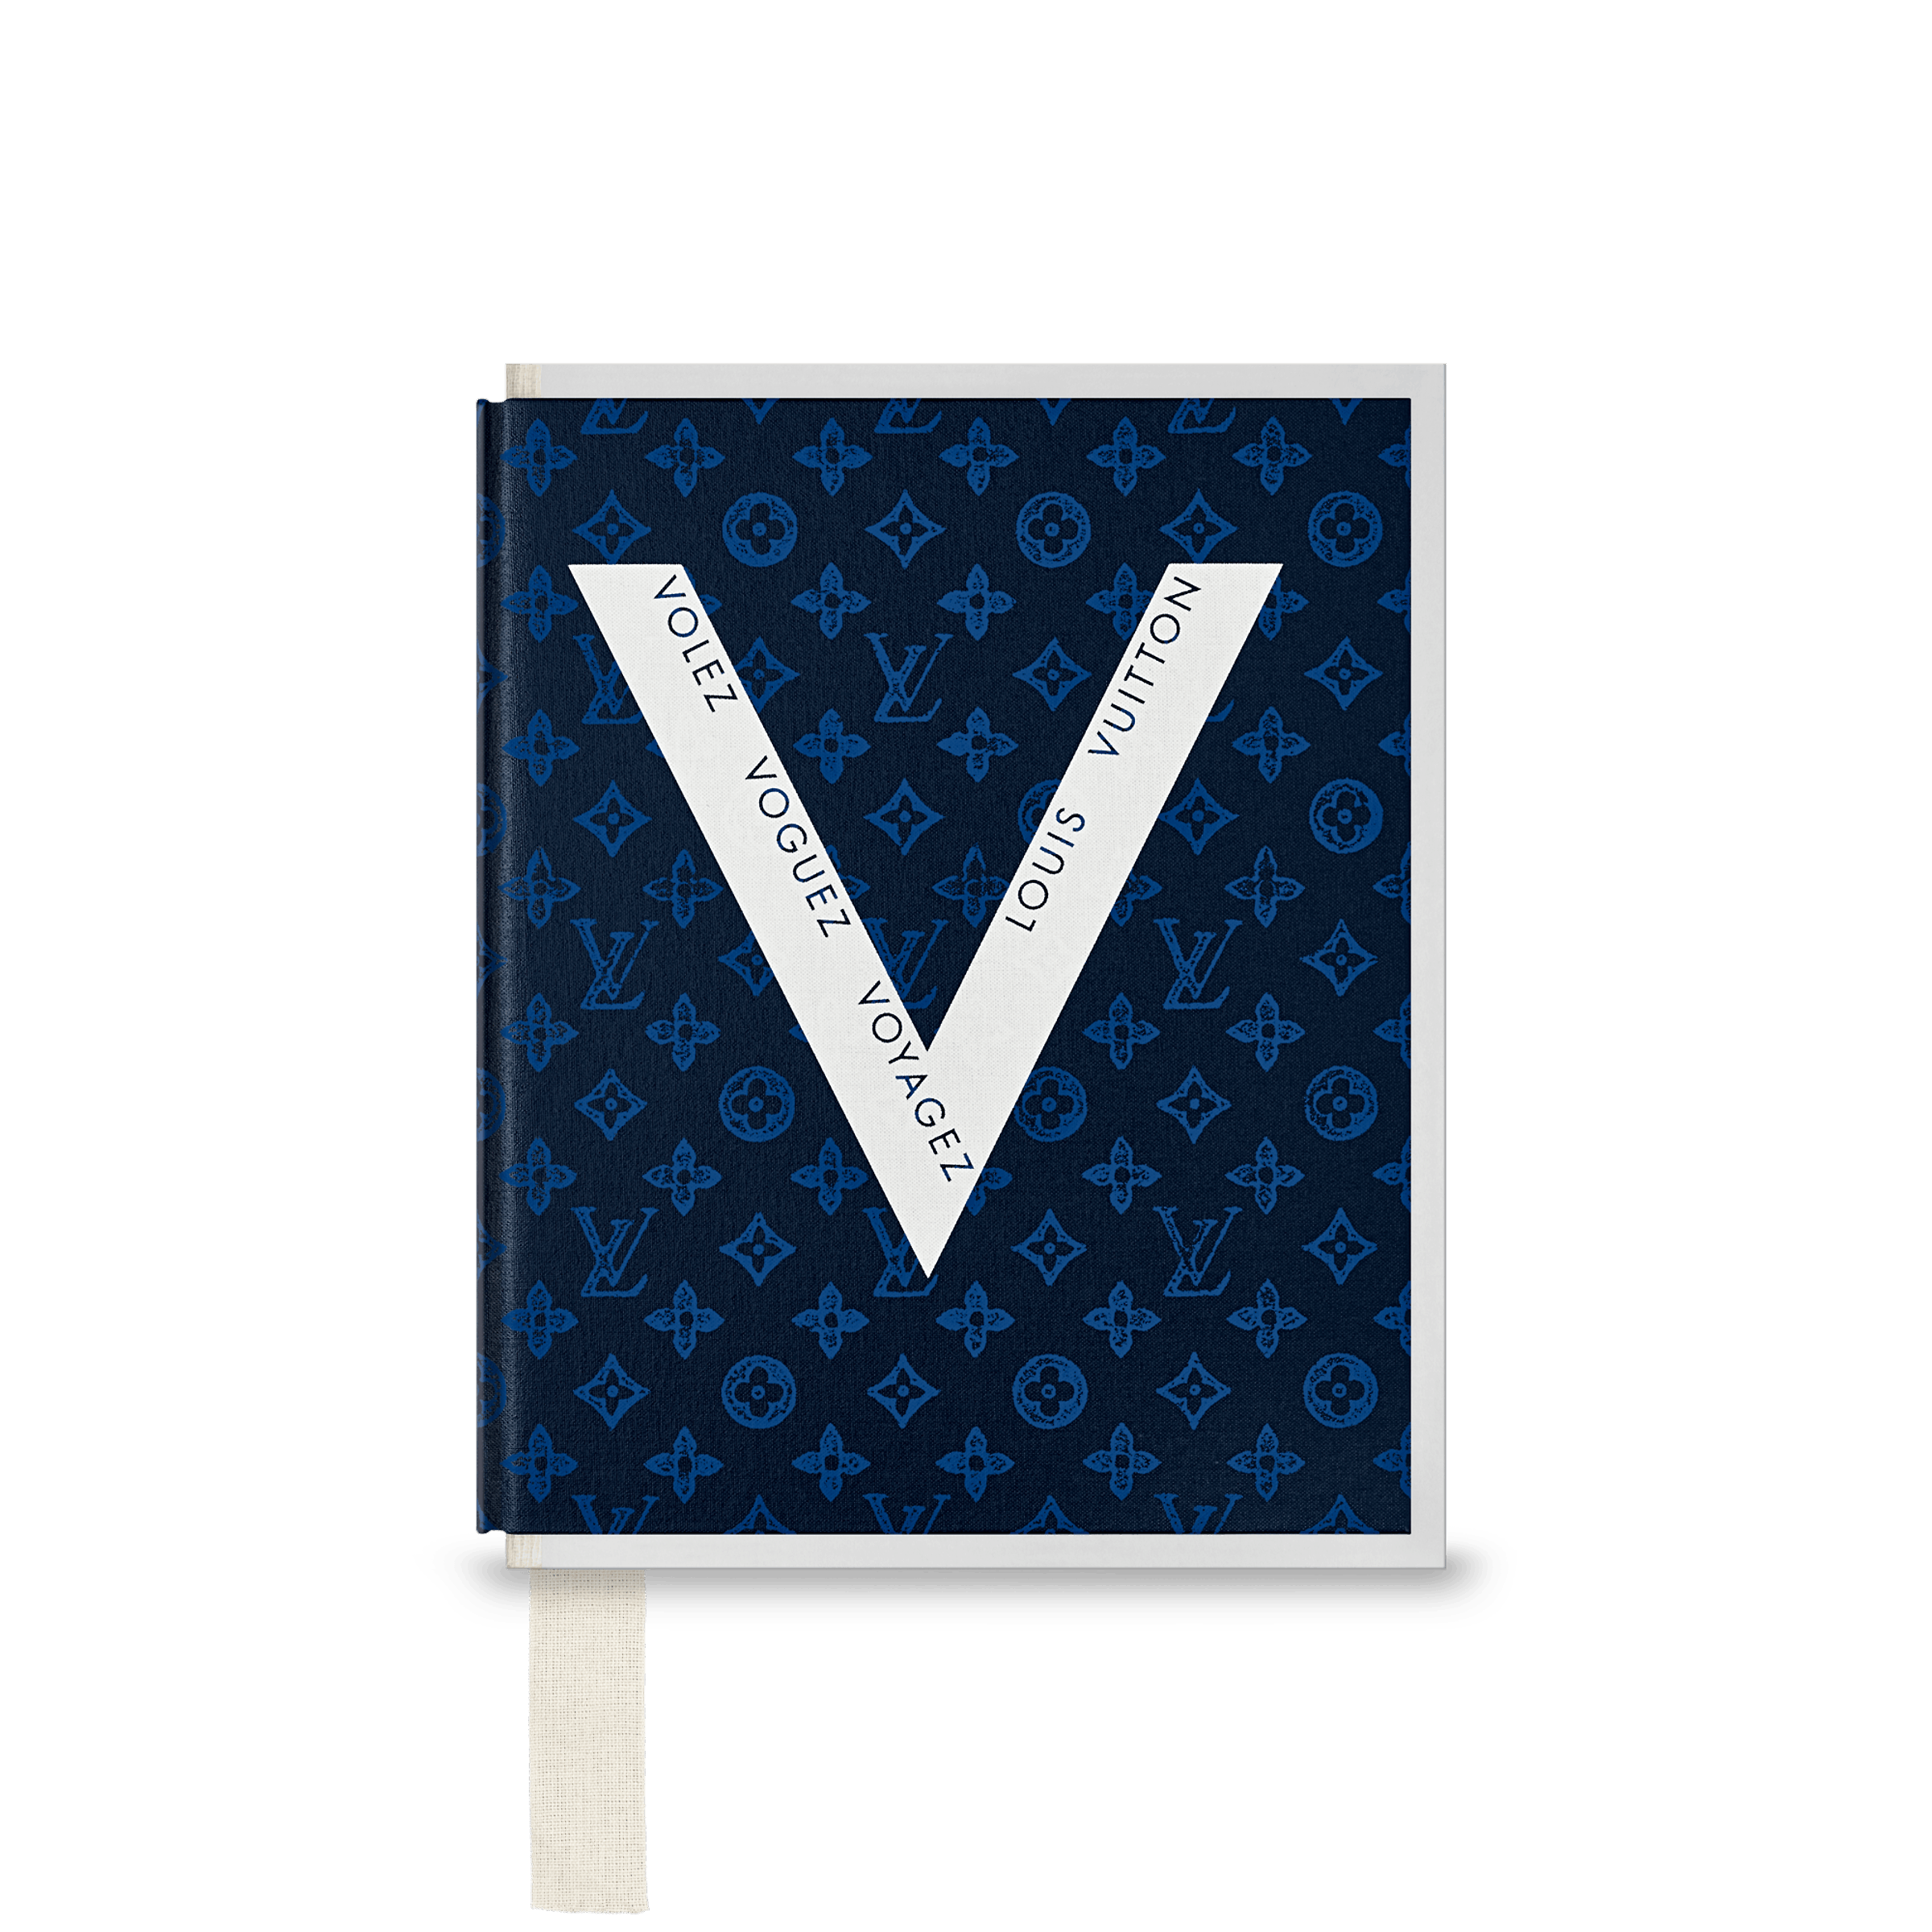 Louis Vuitton Virgil Abloh Pen Magazine No. 479 - Virgil Abloh